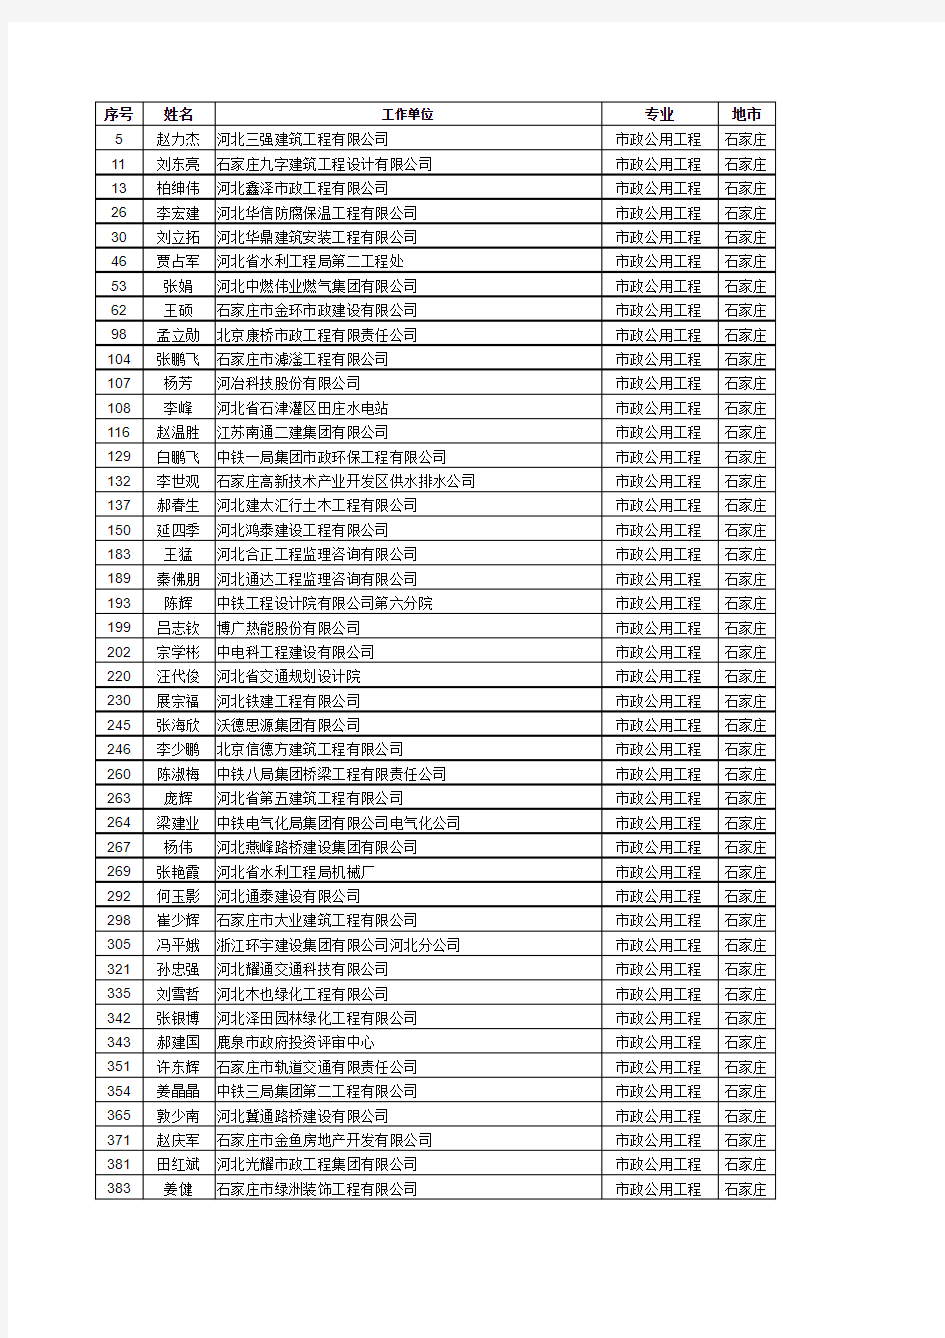 2014年河北省一级建造师合格名单